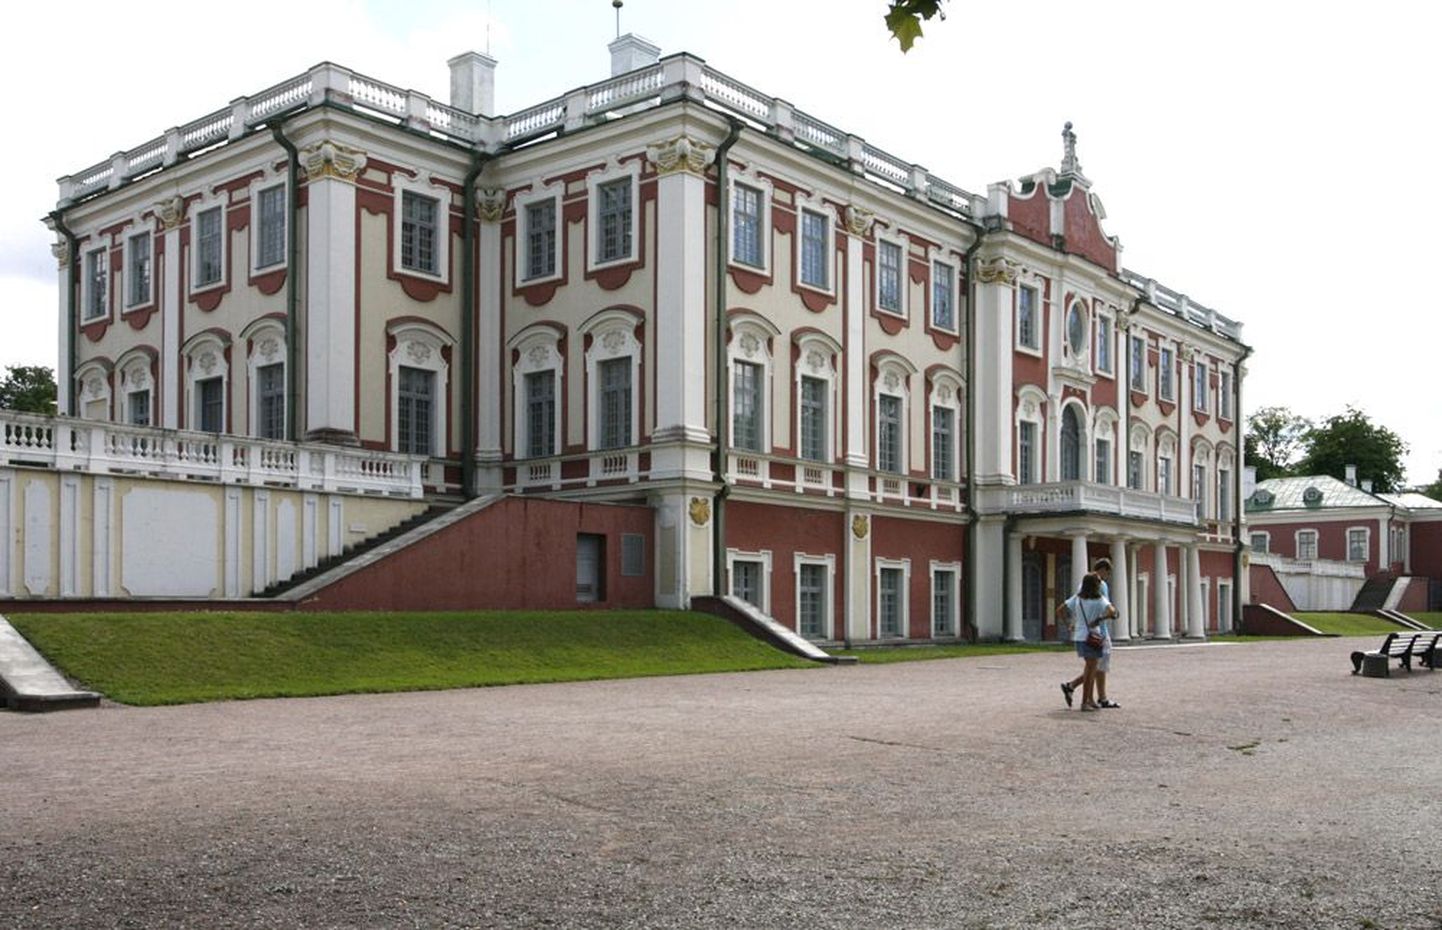 Во дворце, который российский император подарил своей супруге Екатерине, хранятся сокровища западноевропейского и русского искусства.